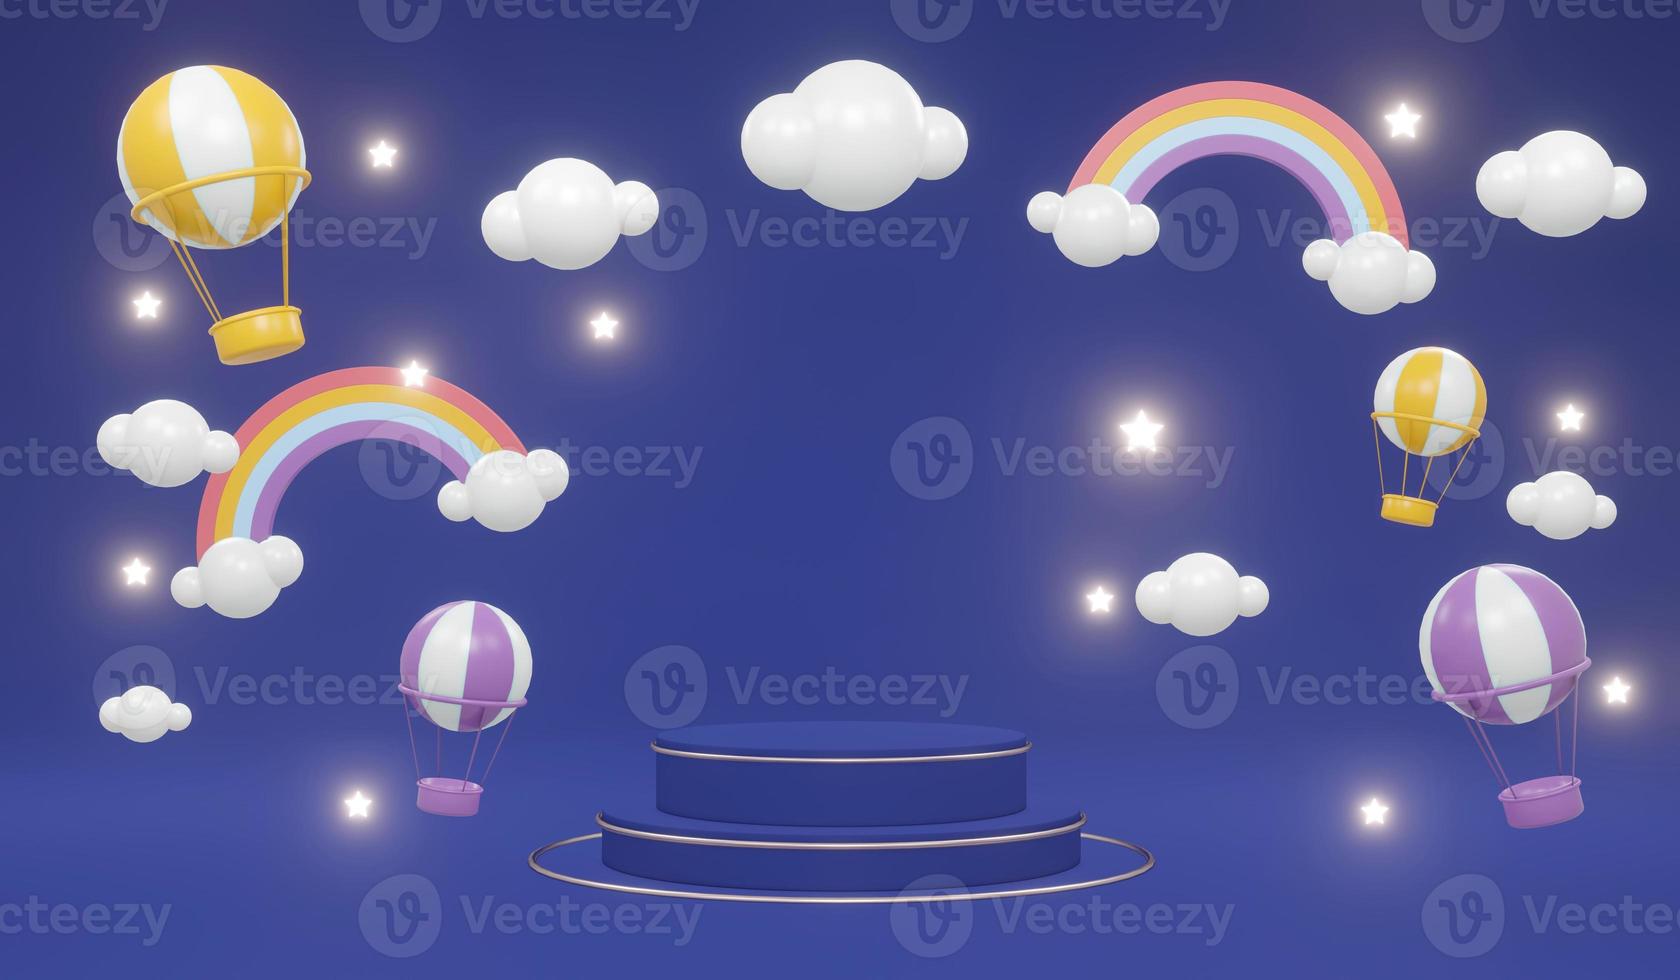 Exhibición de podio de soporte de producto de renderizado 3d con globos de aire caliente de nubes de arco iris y estrellas en el fondo para el concepto de diseño comercial de podio de arco iris. foto